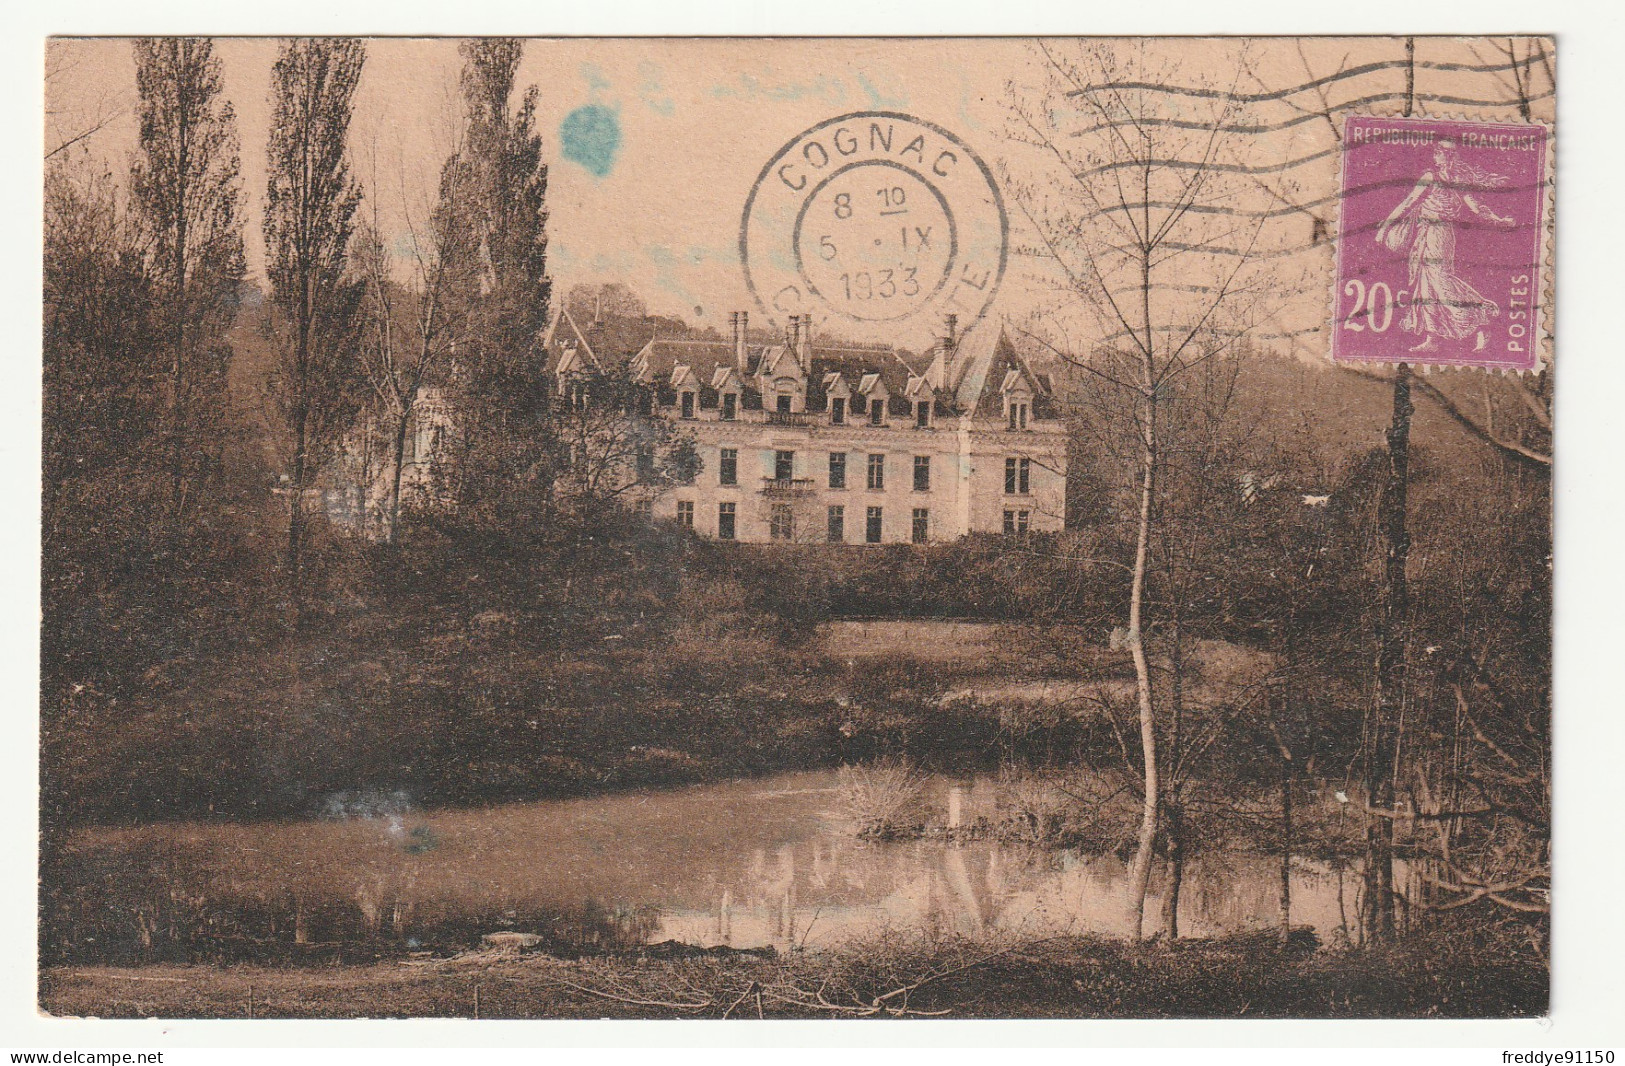 16 . Cognac . Château De Gademoulin . 1933 - Cognac